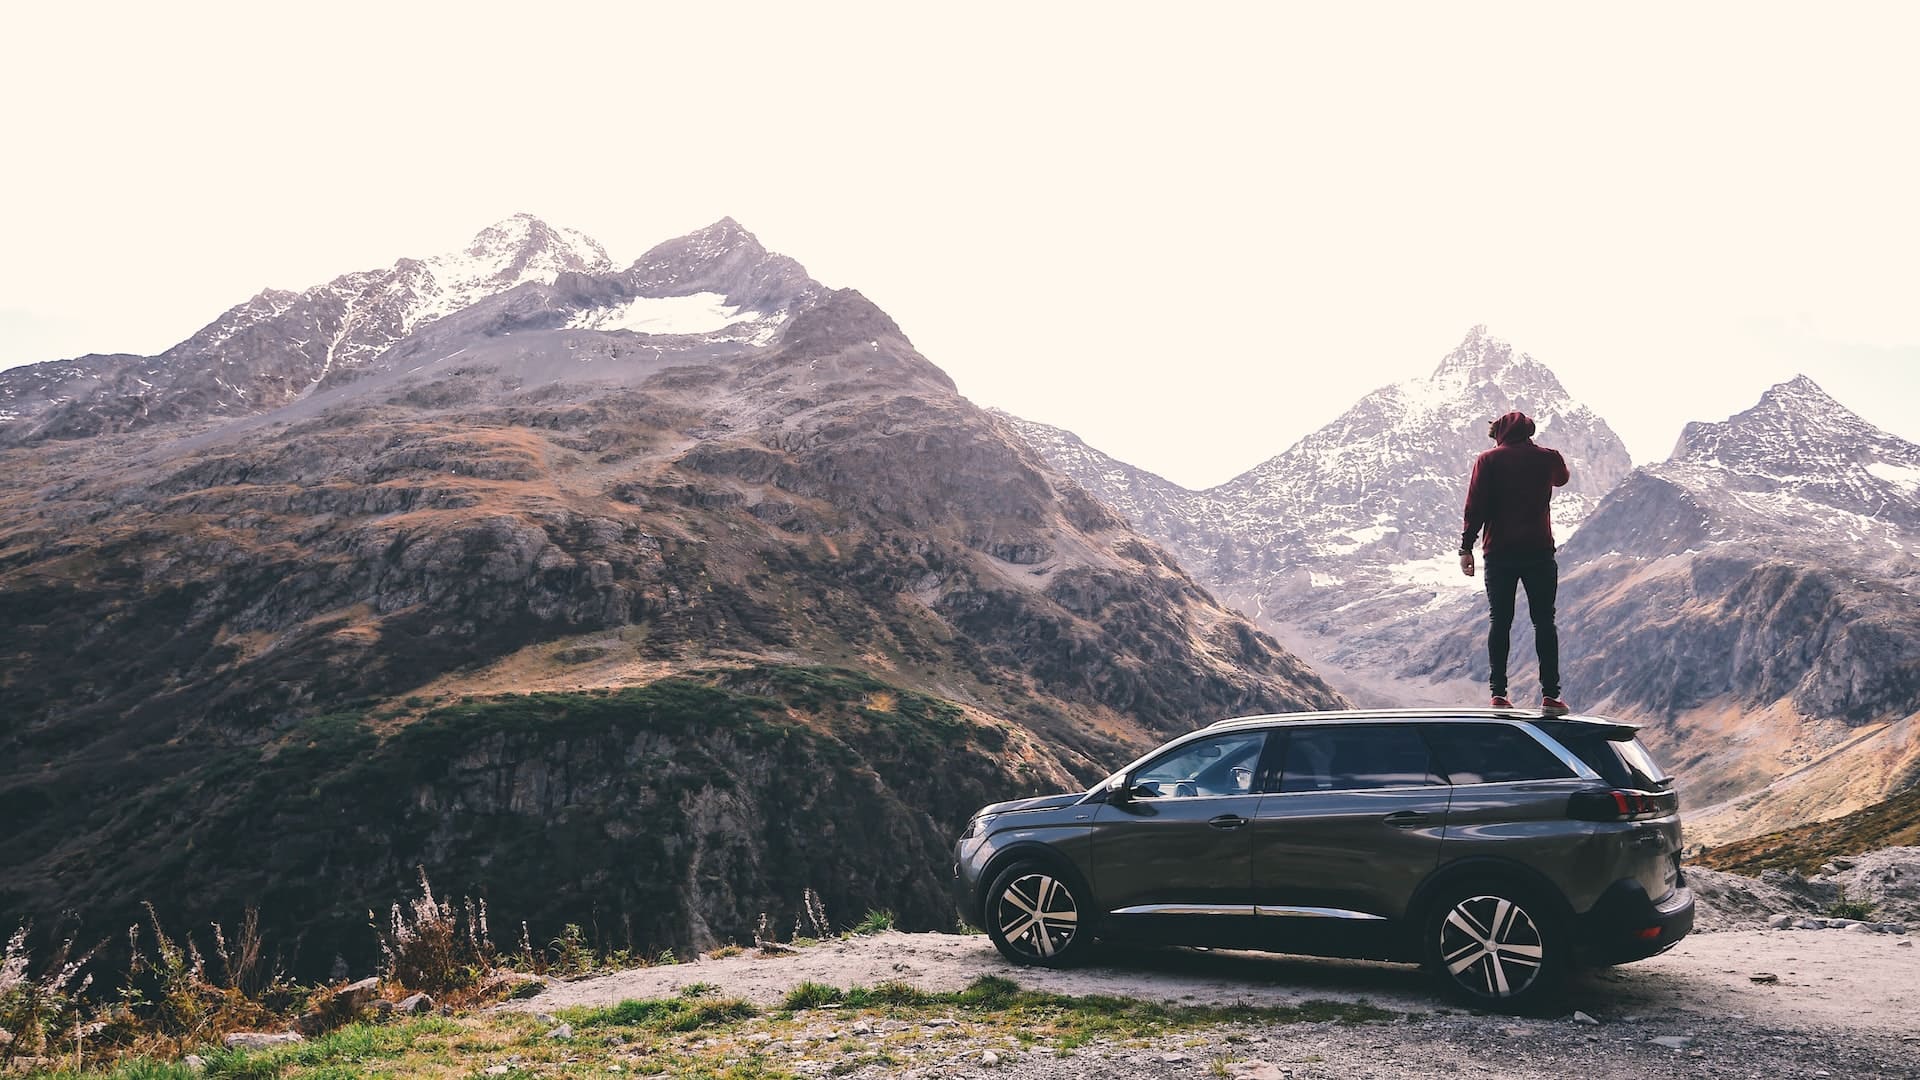 Mann steht auf Auto und genießt Ausblick auf Berge 